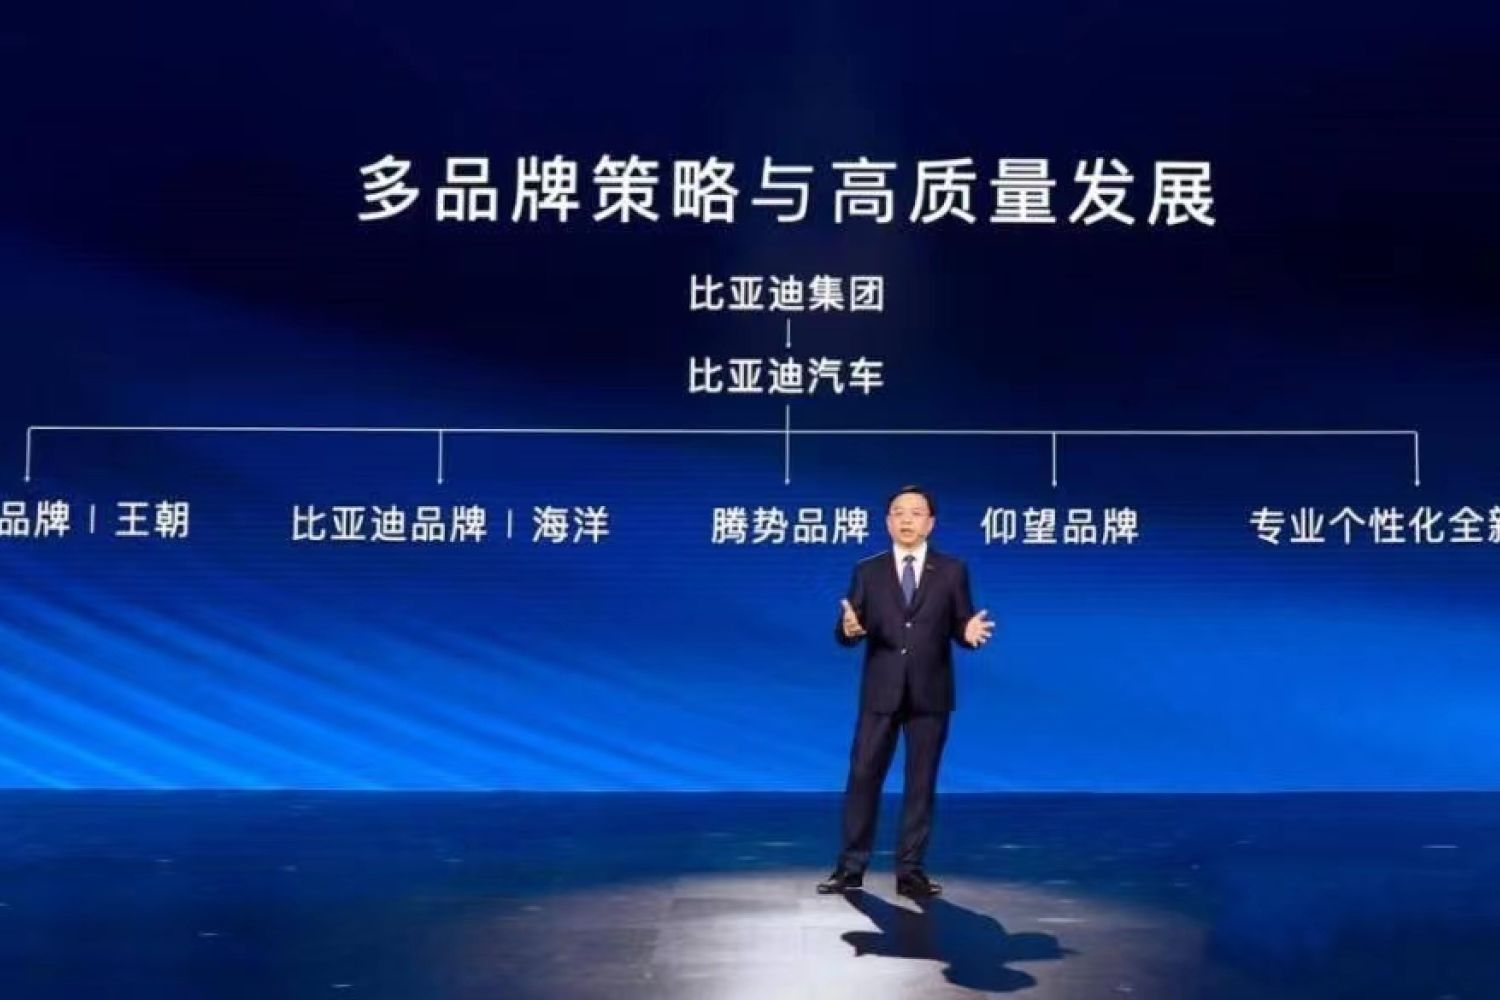 比亚迪跻身全球销量前十再创中国品牌新里程碑